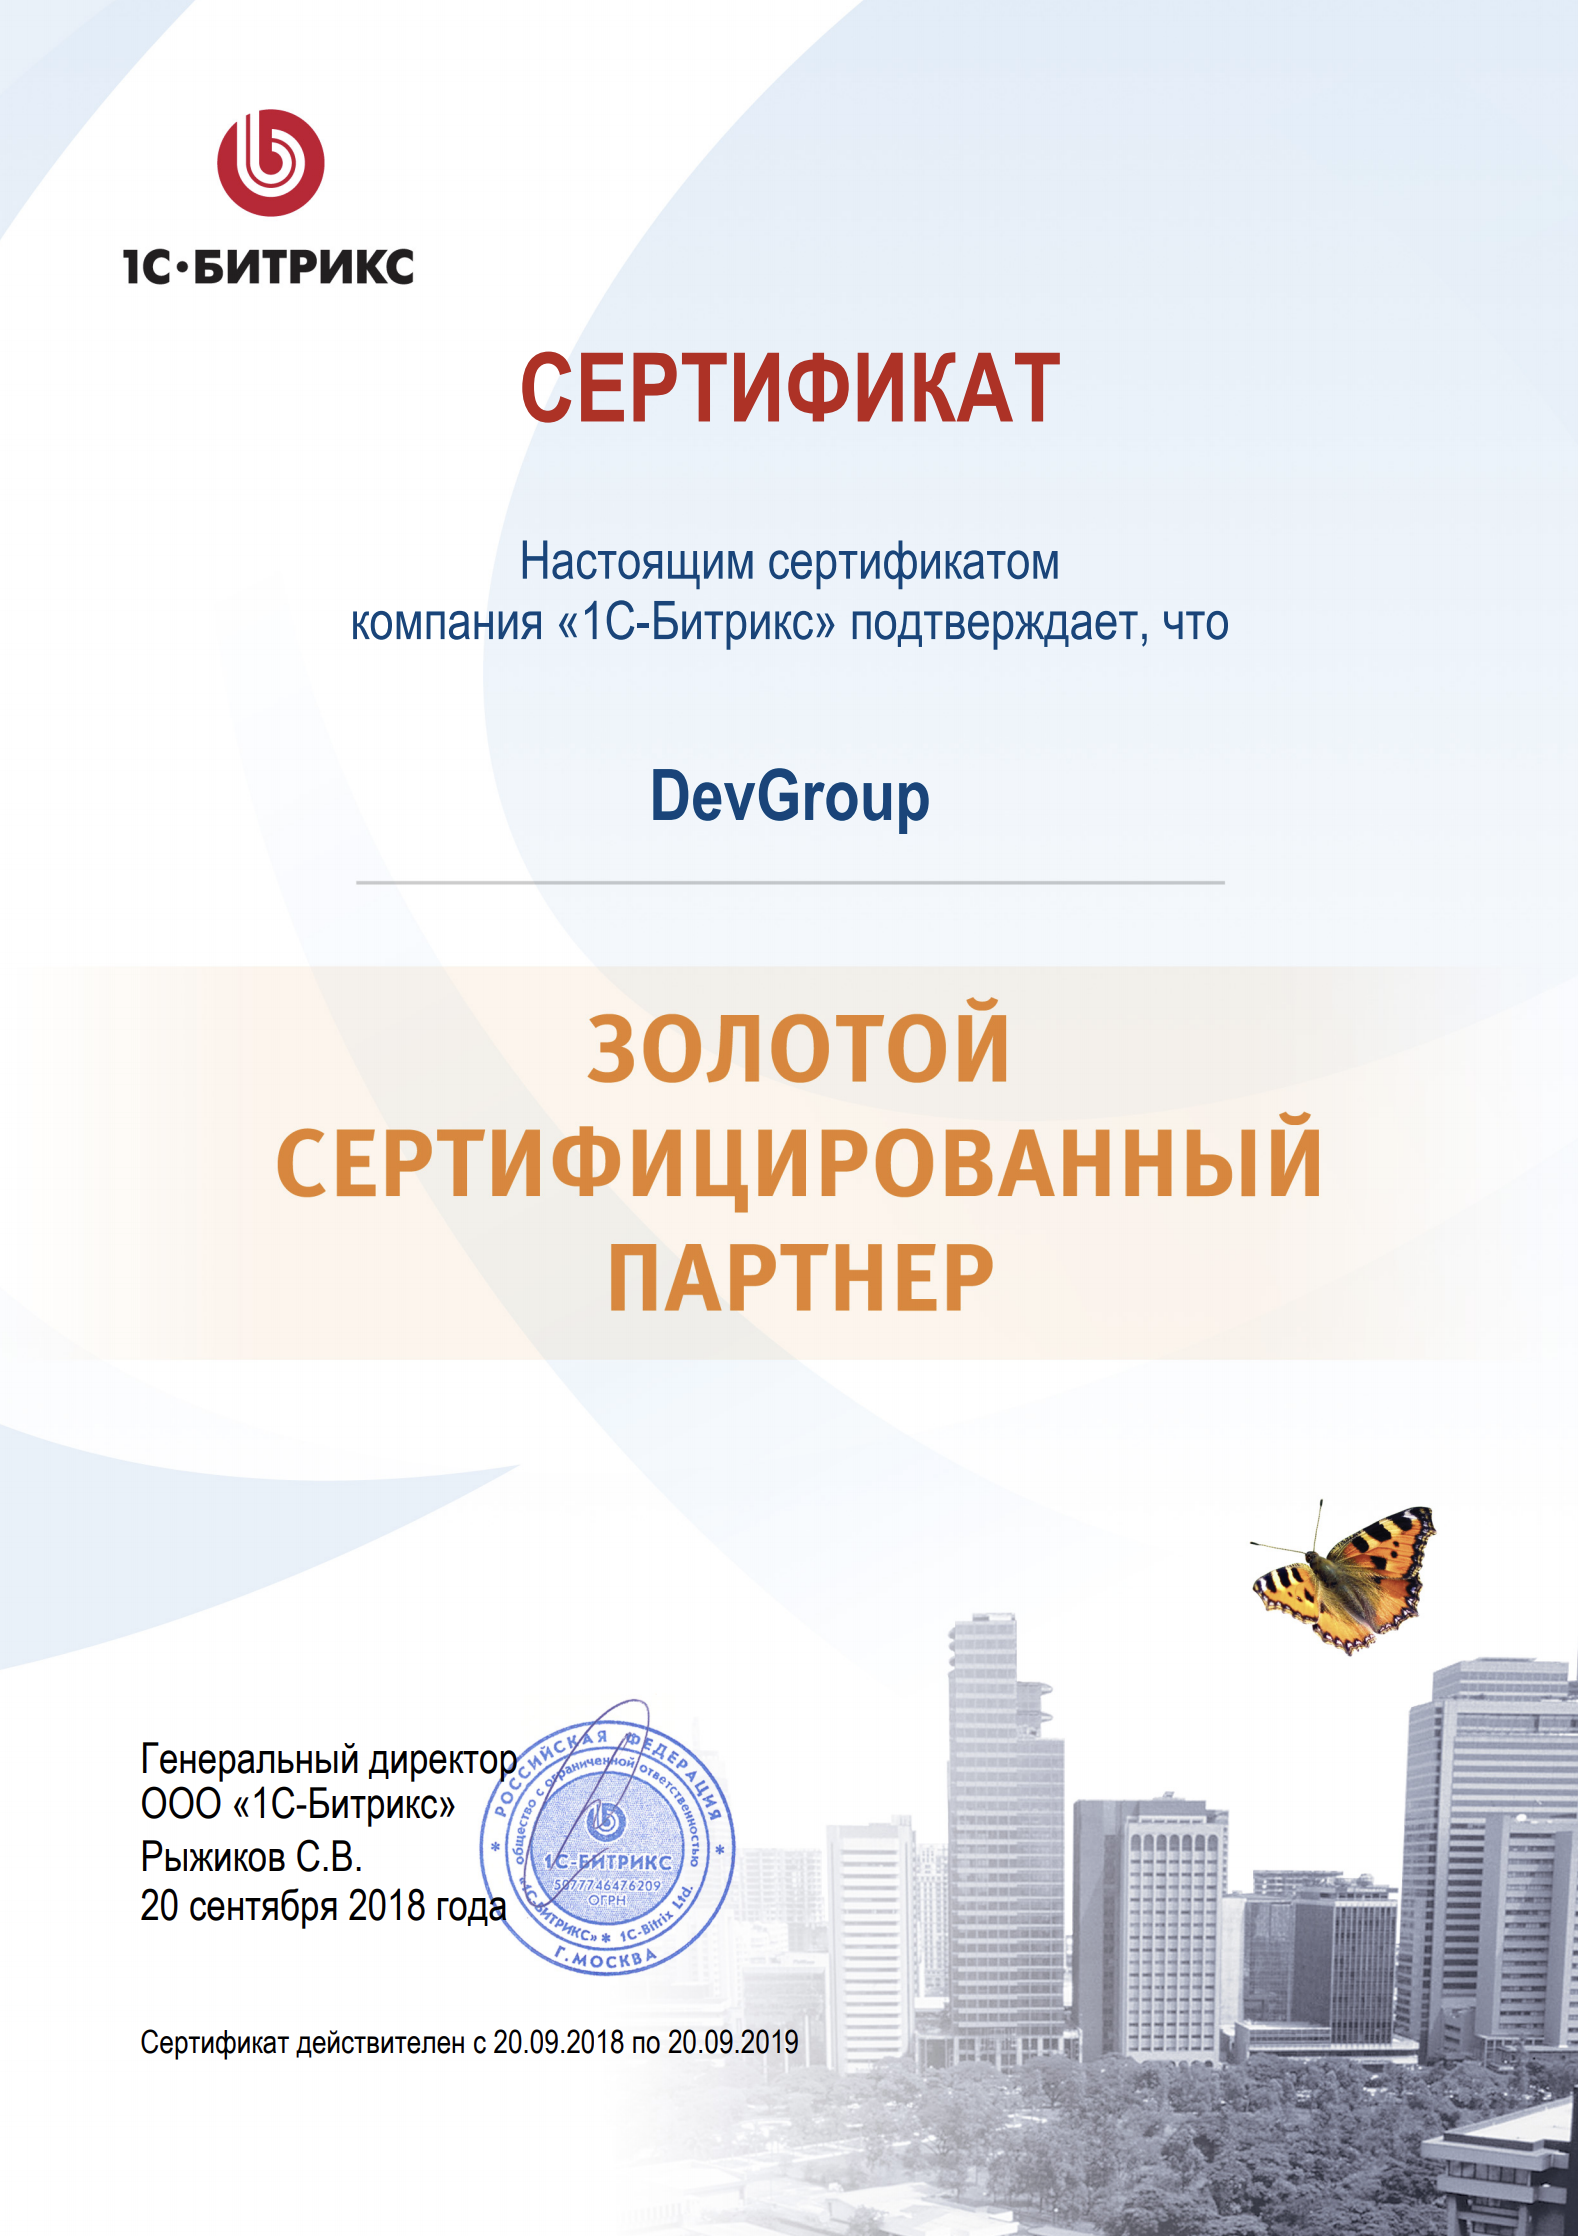 DevGroup - сертифицированный партнёр 1С Битрикс